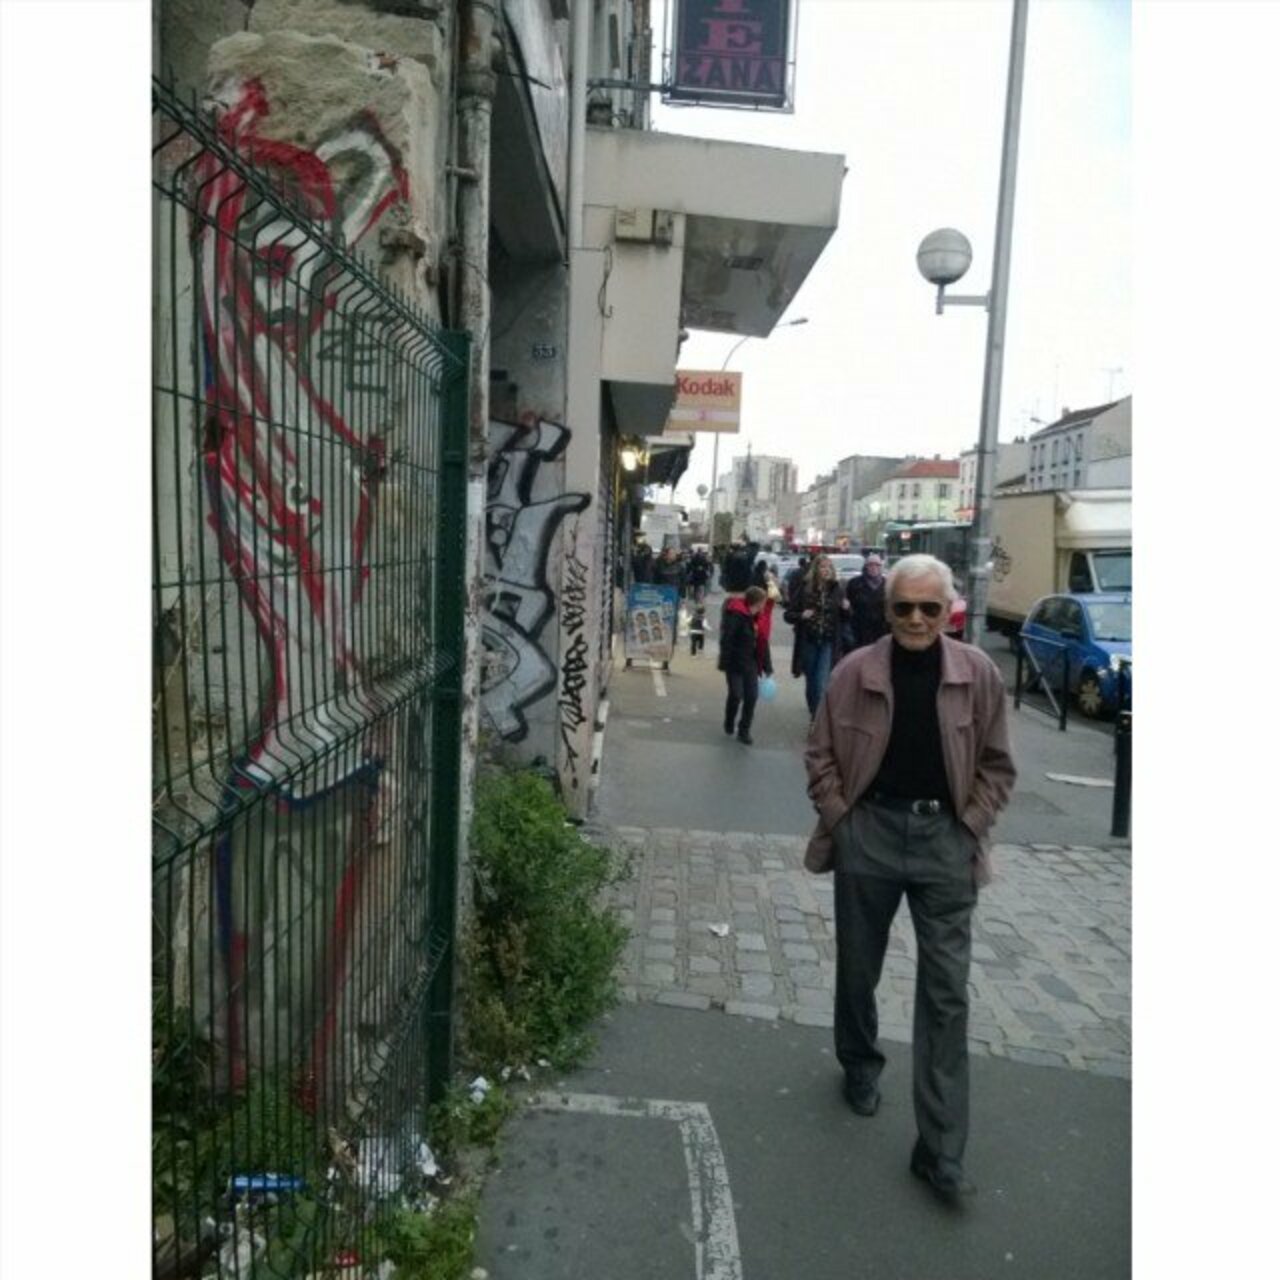 #Paris #graffiti photo by @zecarrion http://ift.tt/206uFuG #StreetArt https://t.co/iLLVJhAsVT